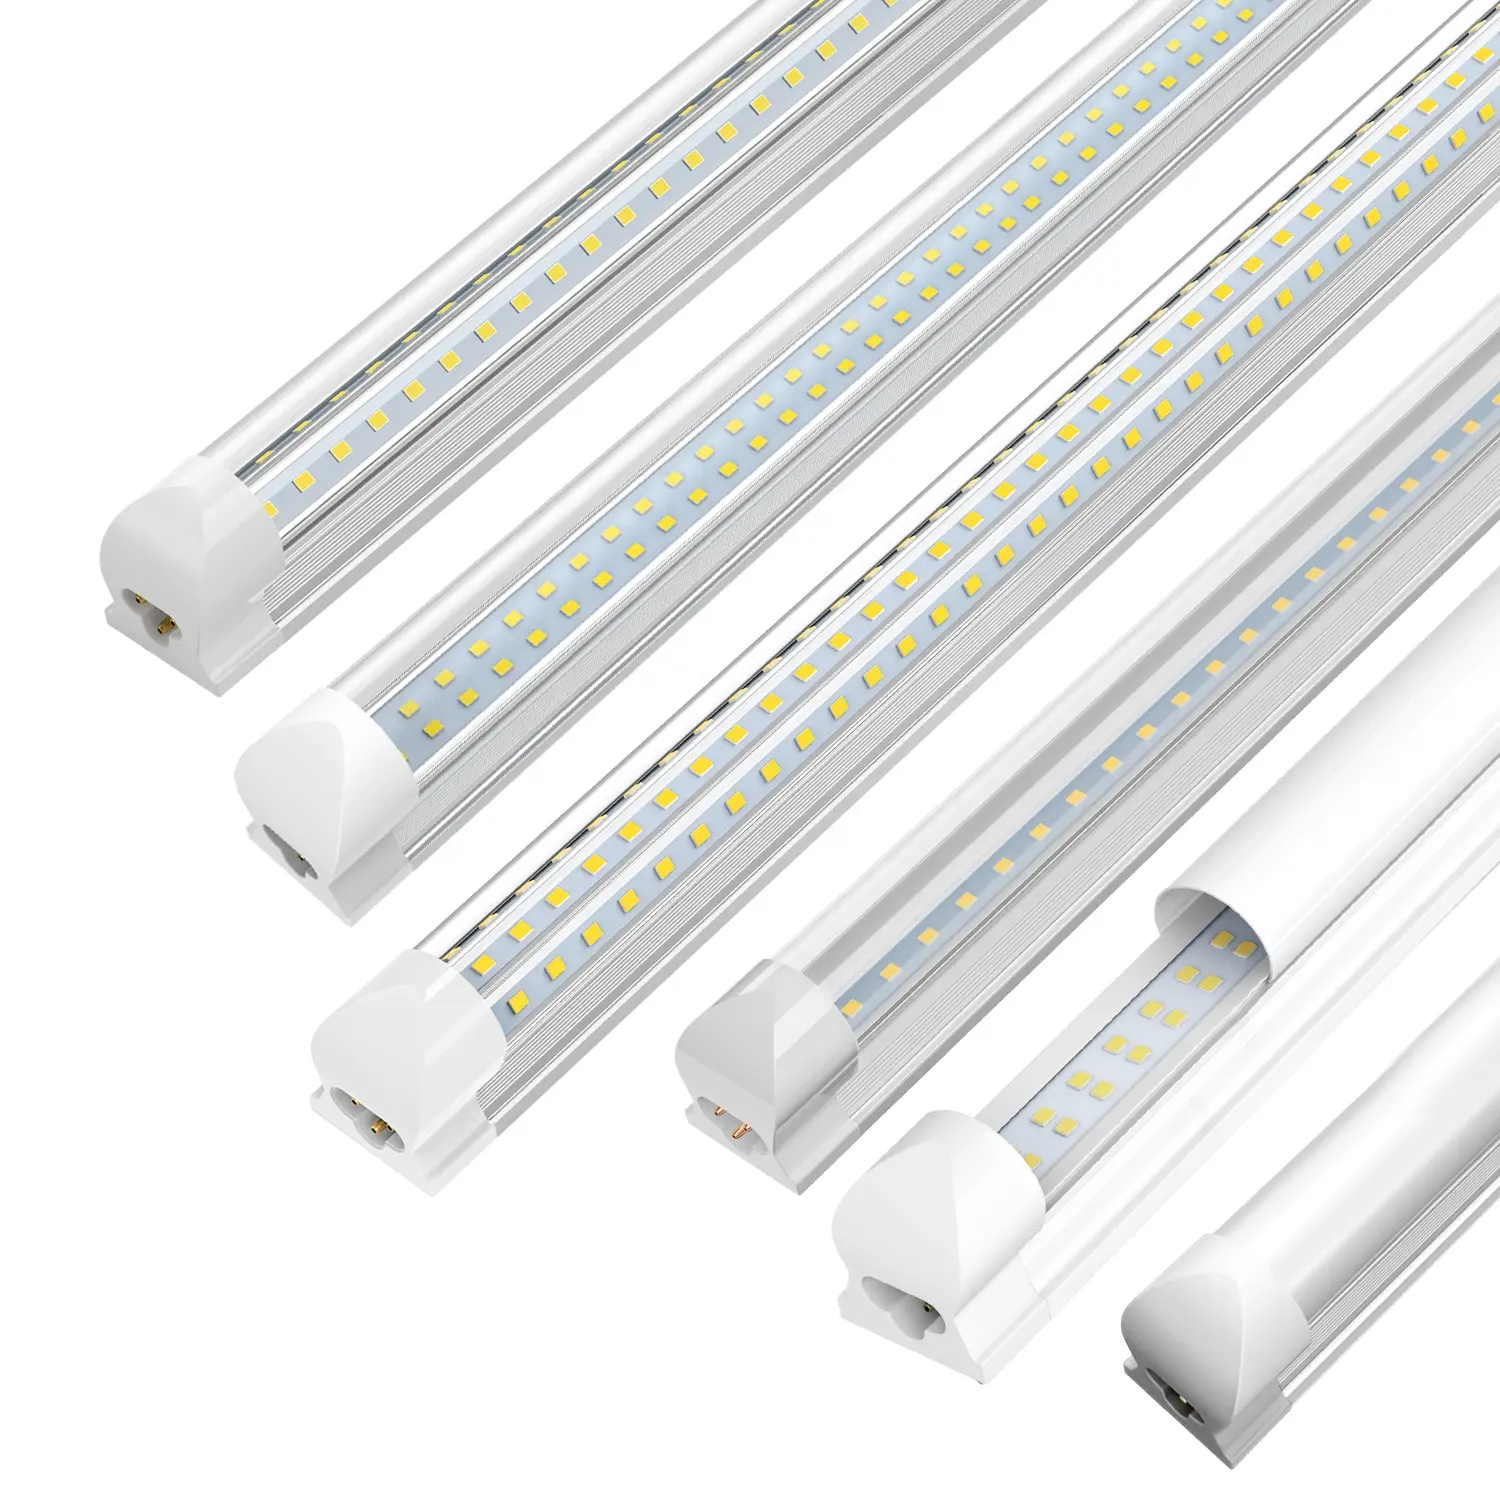 JESLED Integrated LED Tube Light 12W/14W/18W/24W/28W/36W/45/72W/90W 0.3m-0.6m-0.9m-1.2m-1.5m-2.4m T8 Led Tube 8 Foot LED Lights